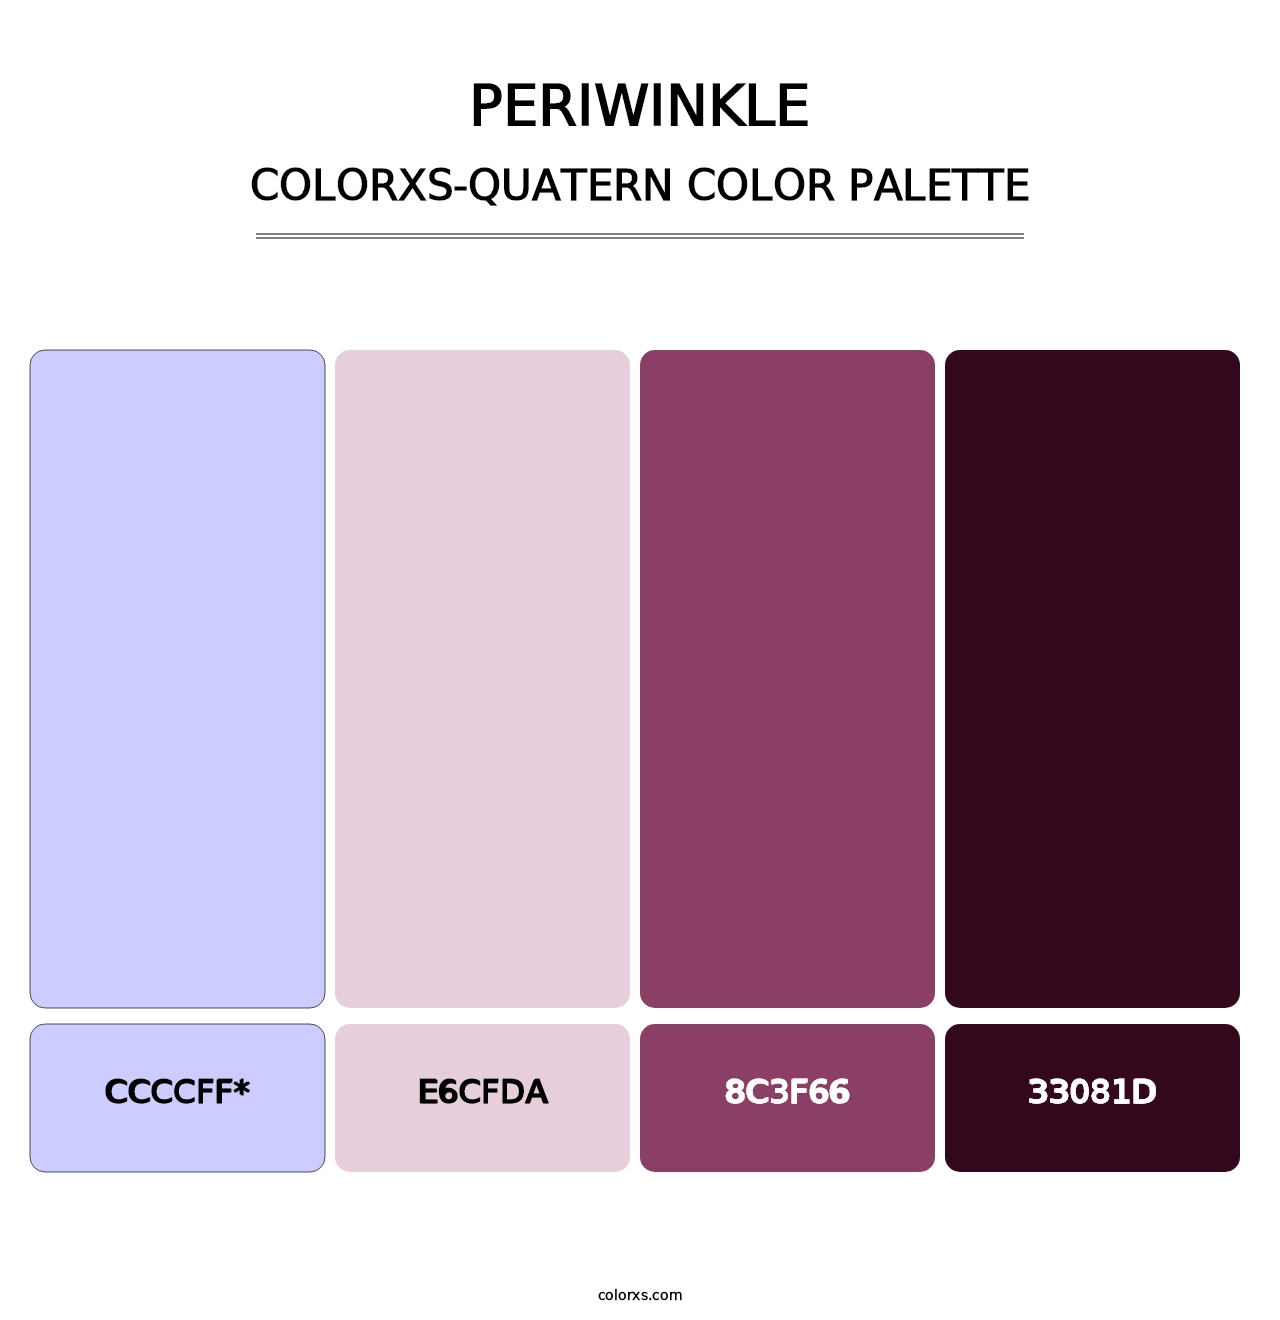 Periwinkle - Colorxs Quatern Palette